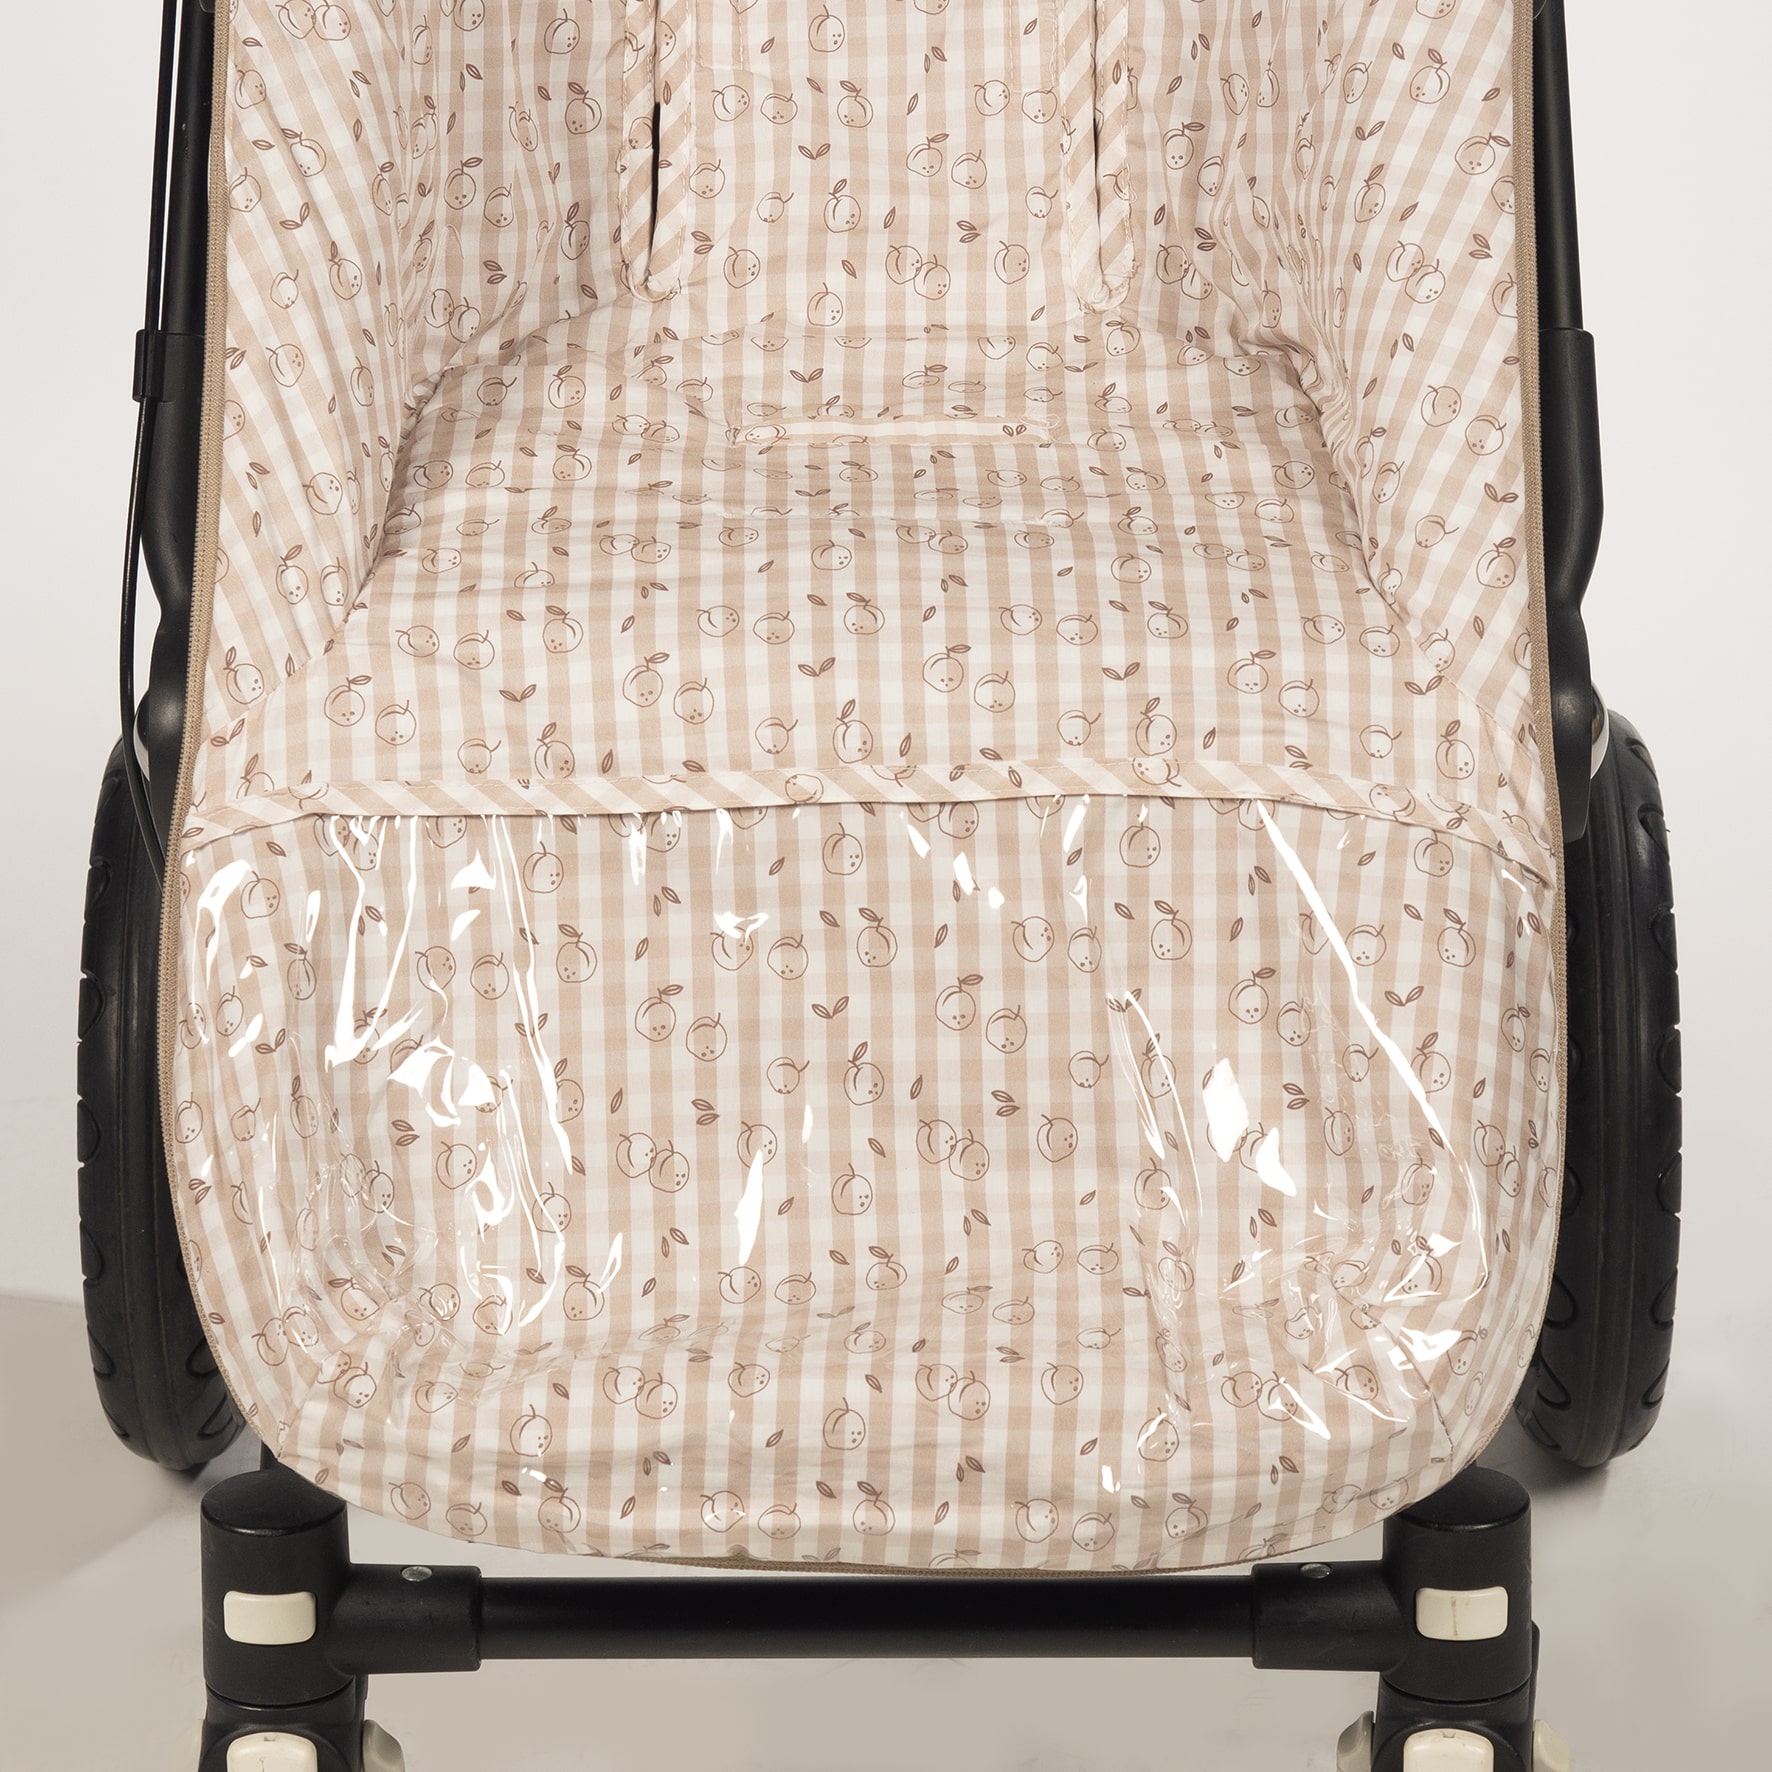 Saco silla Peach entretiempo Pasito a Pasito Funda Peach en tela de cuadros y un suave y fresco tejido tipo saco, ideal para cubrir la silla de paseo provista de saco